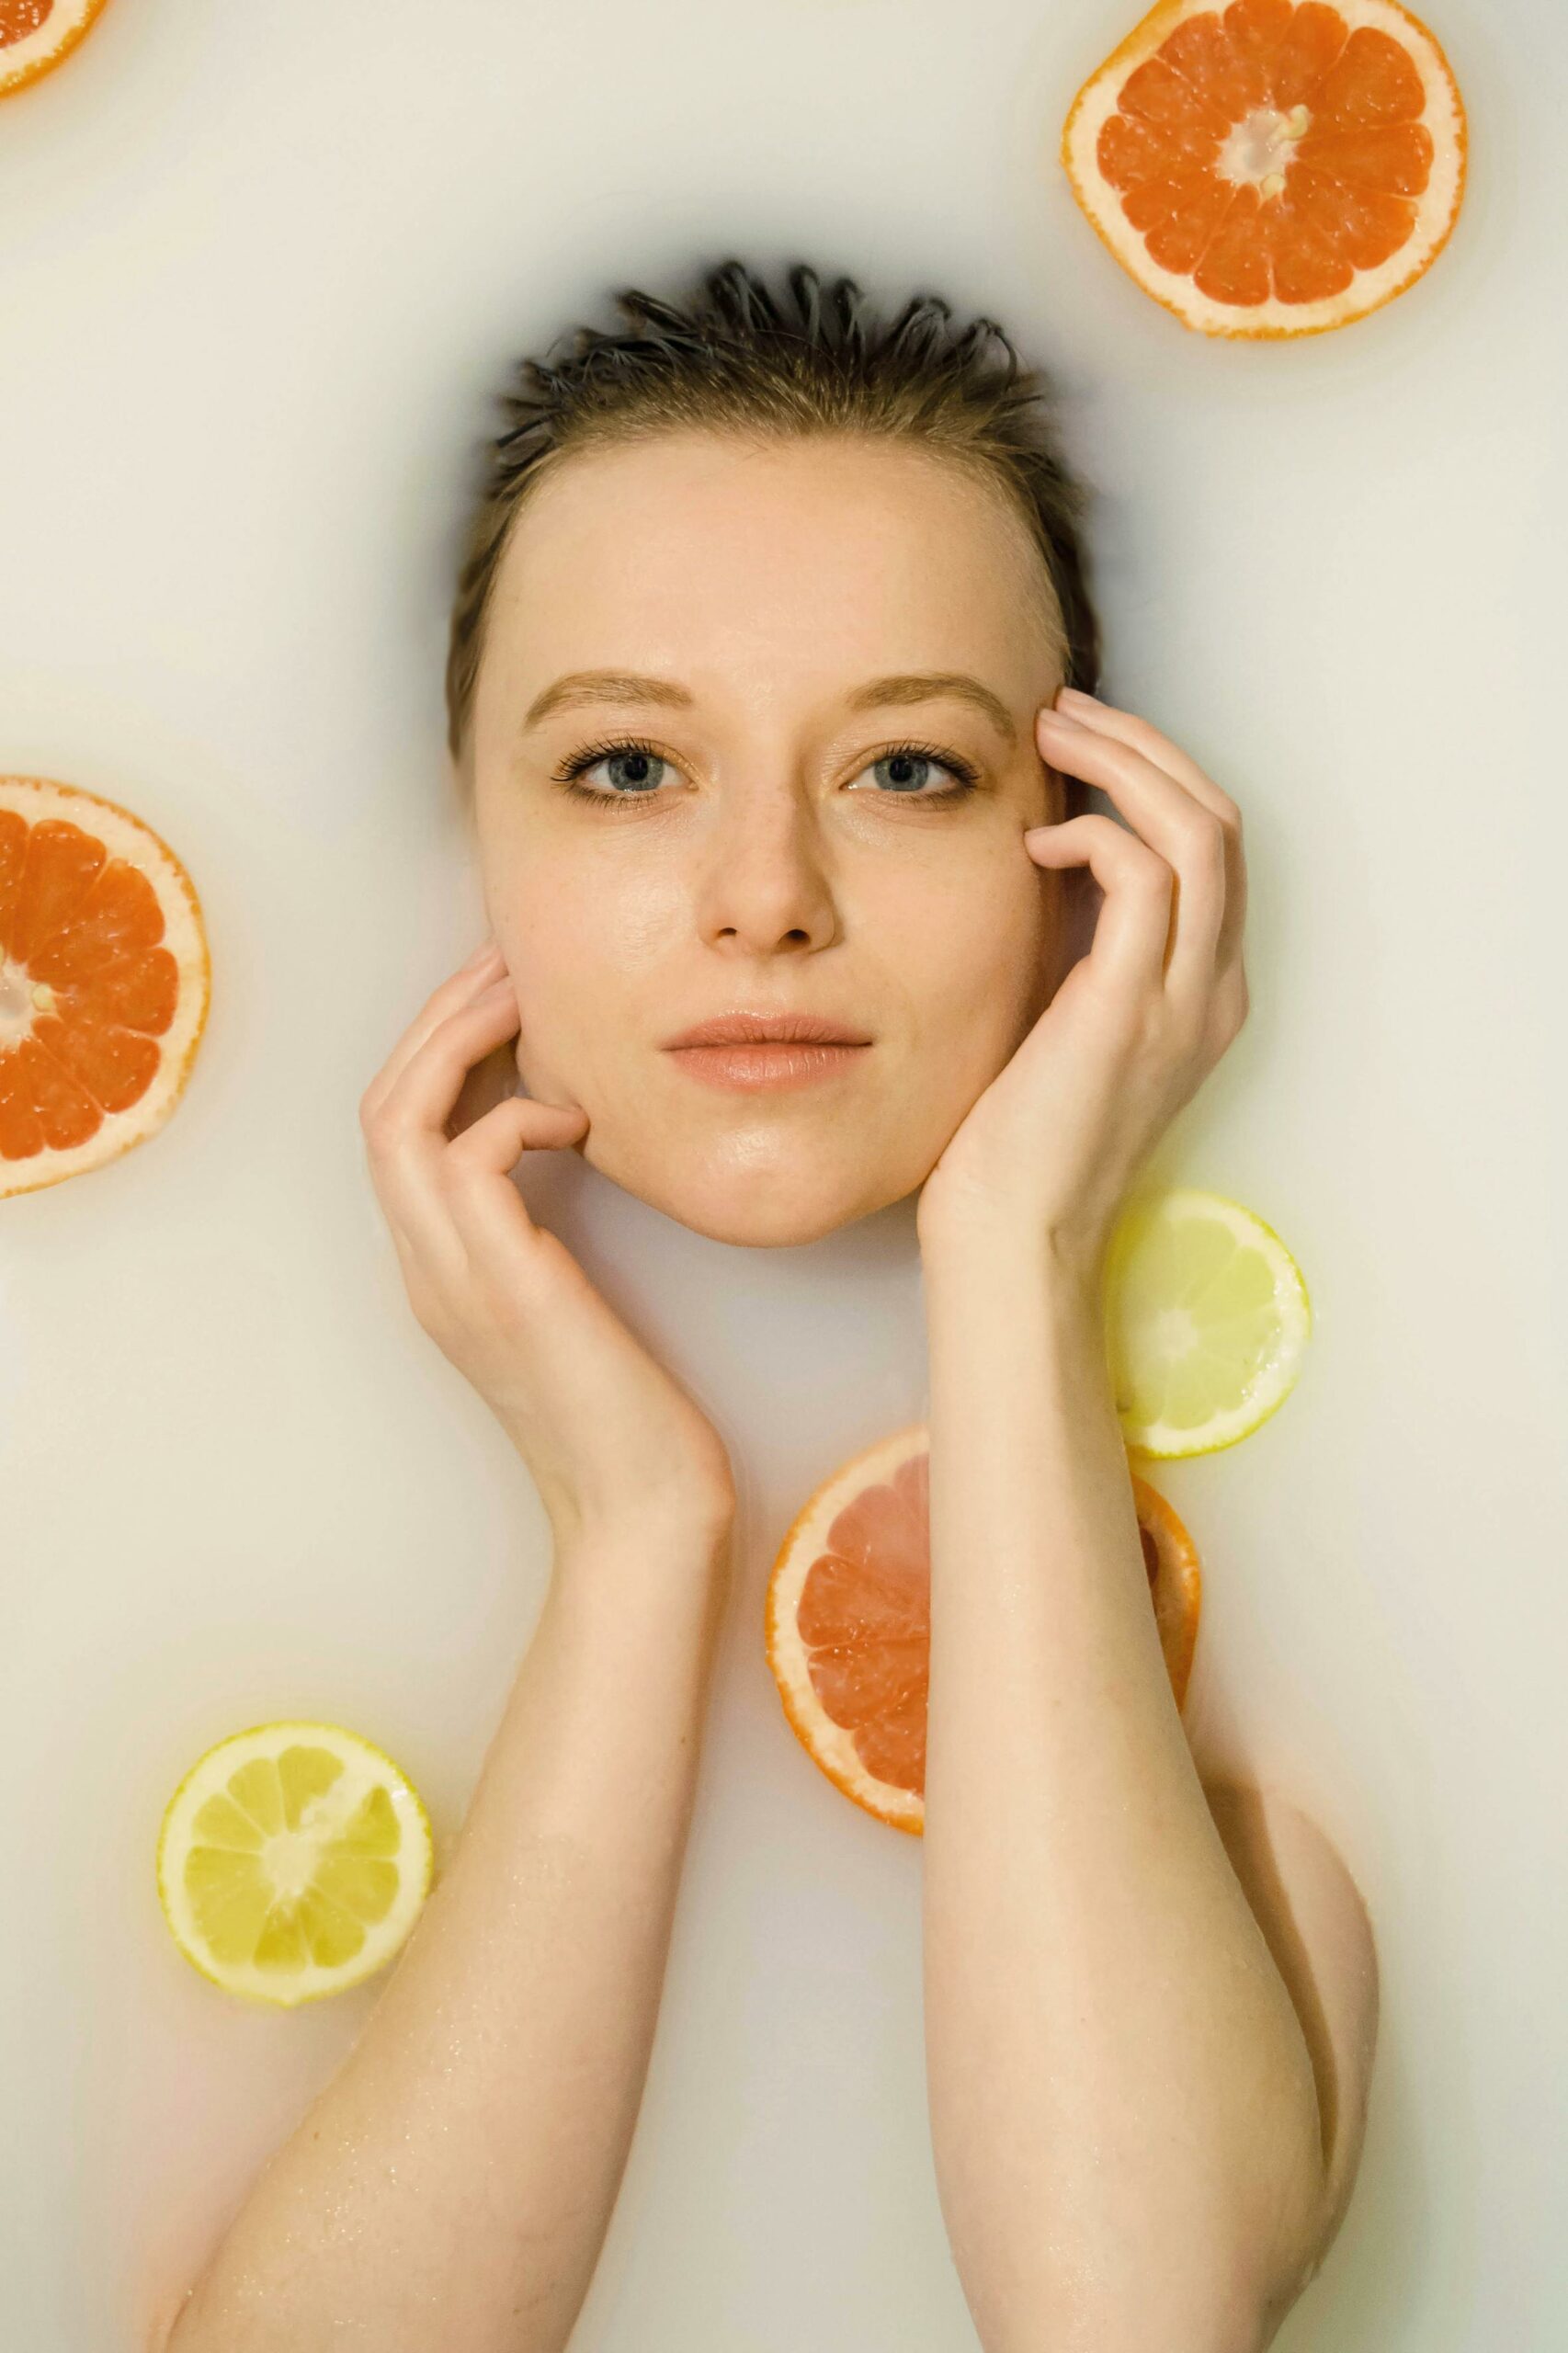 κοπέλα με πορτοκάλια και λεμόνια σε φωτογράφιση για το δέρμα